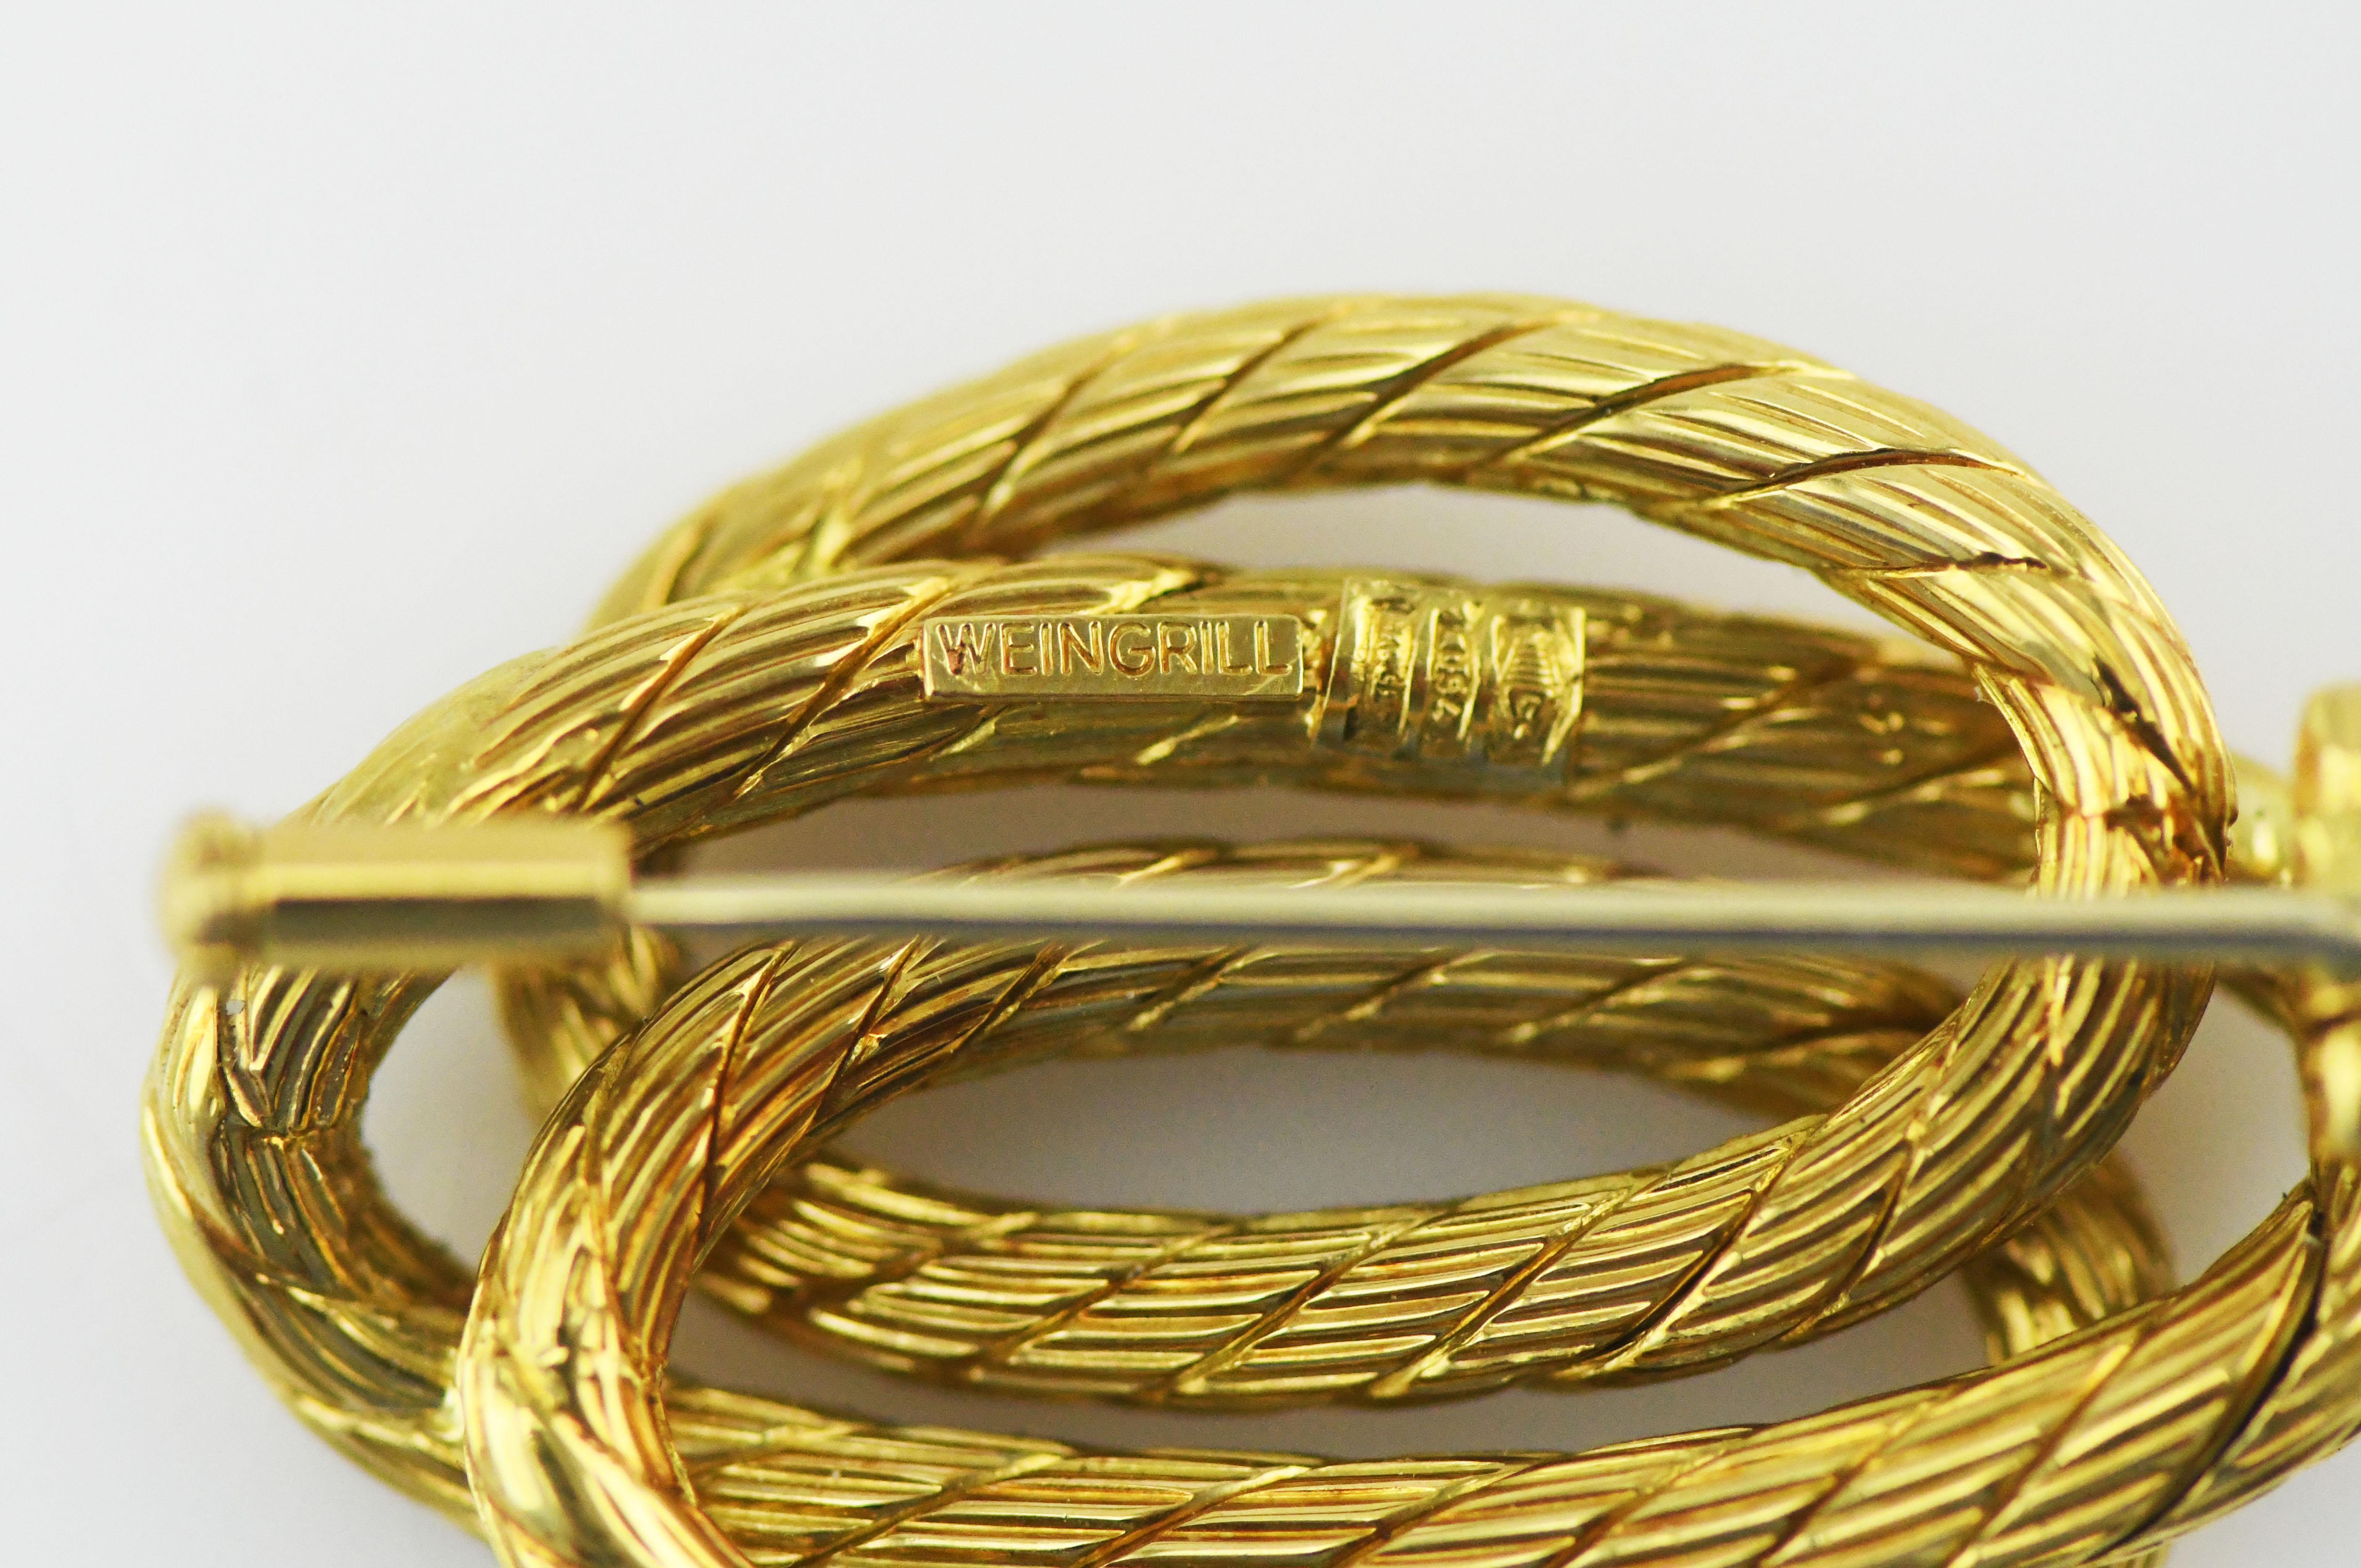 Carlo Weingrill 18 Karat Gold Winding Rope Pin  1